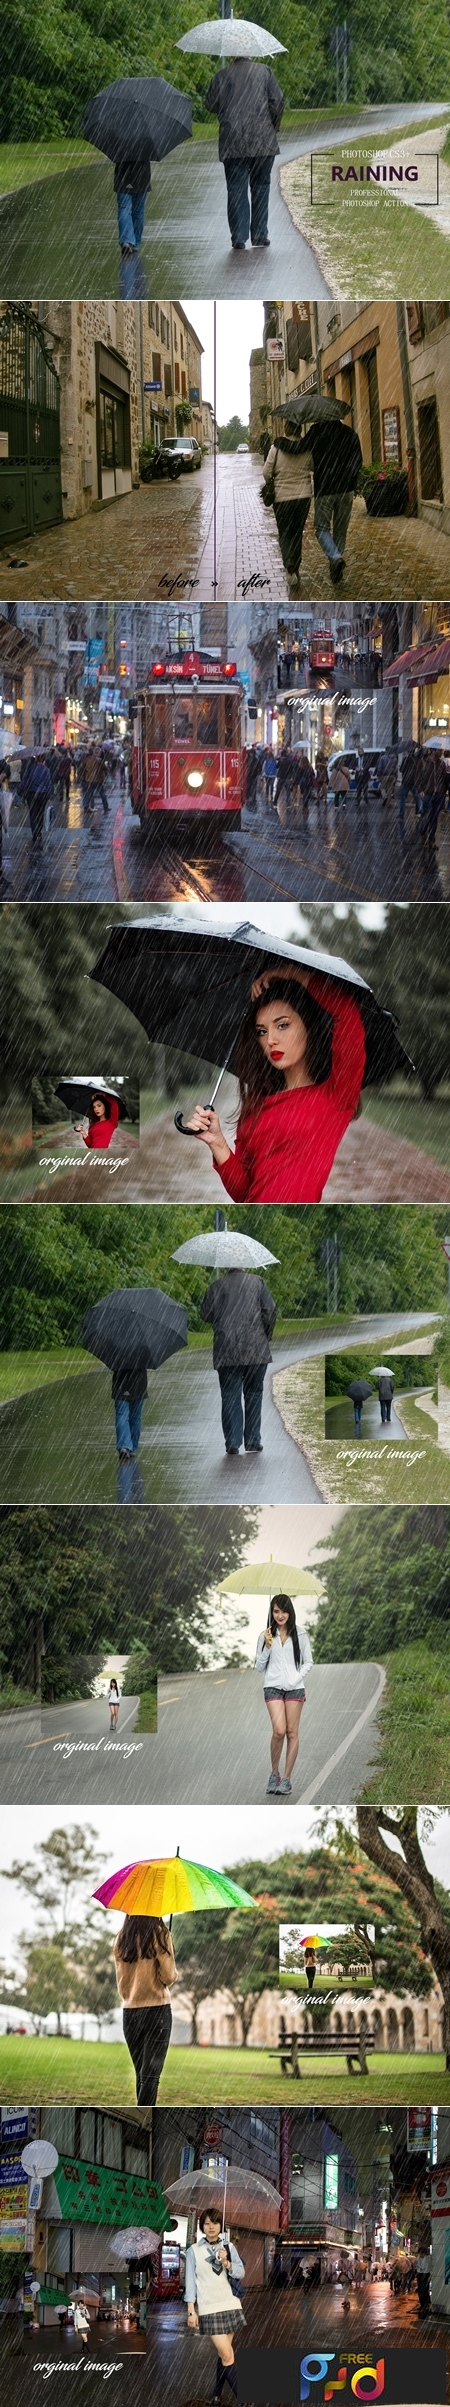 Raining Photoshop Action